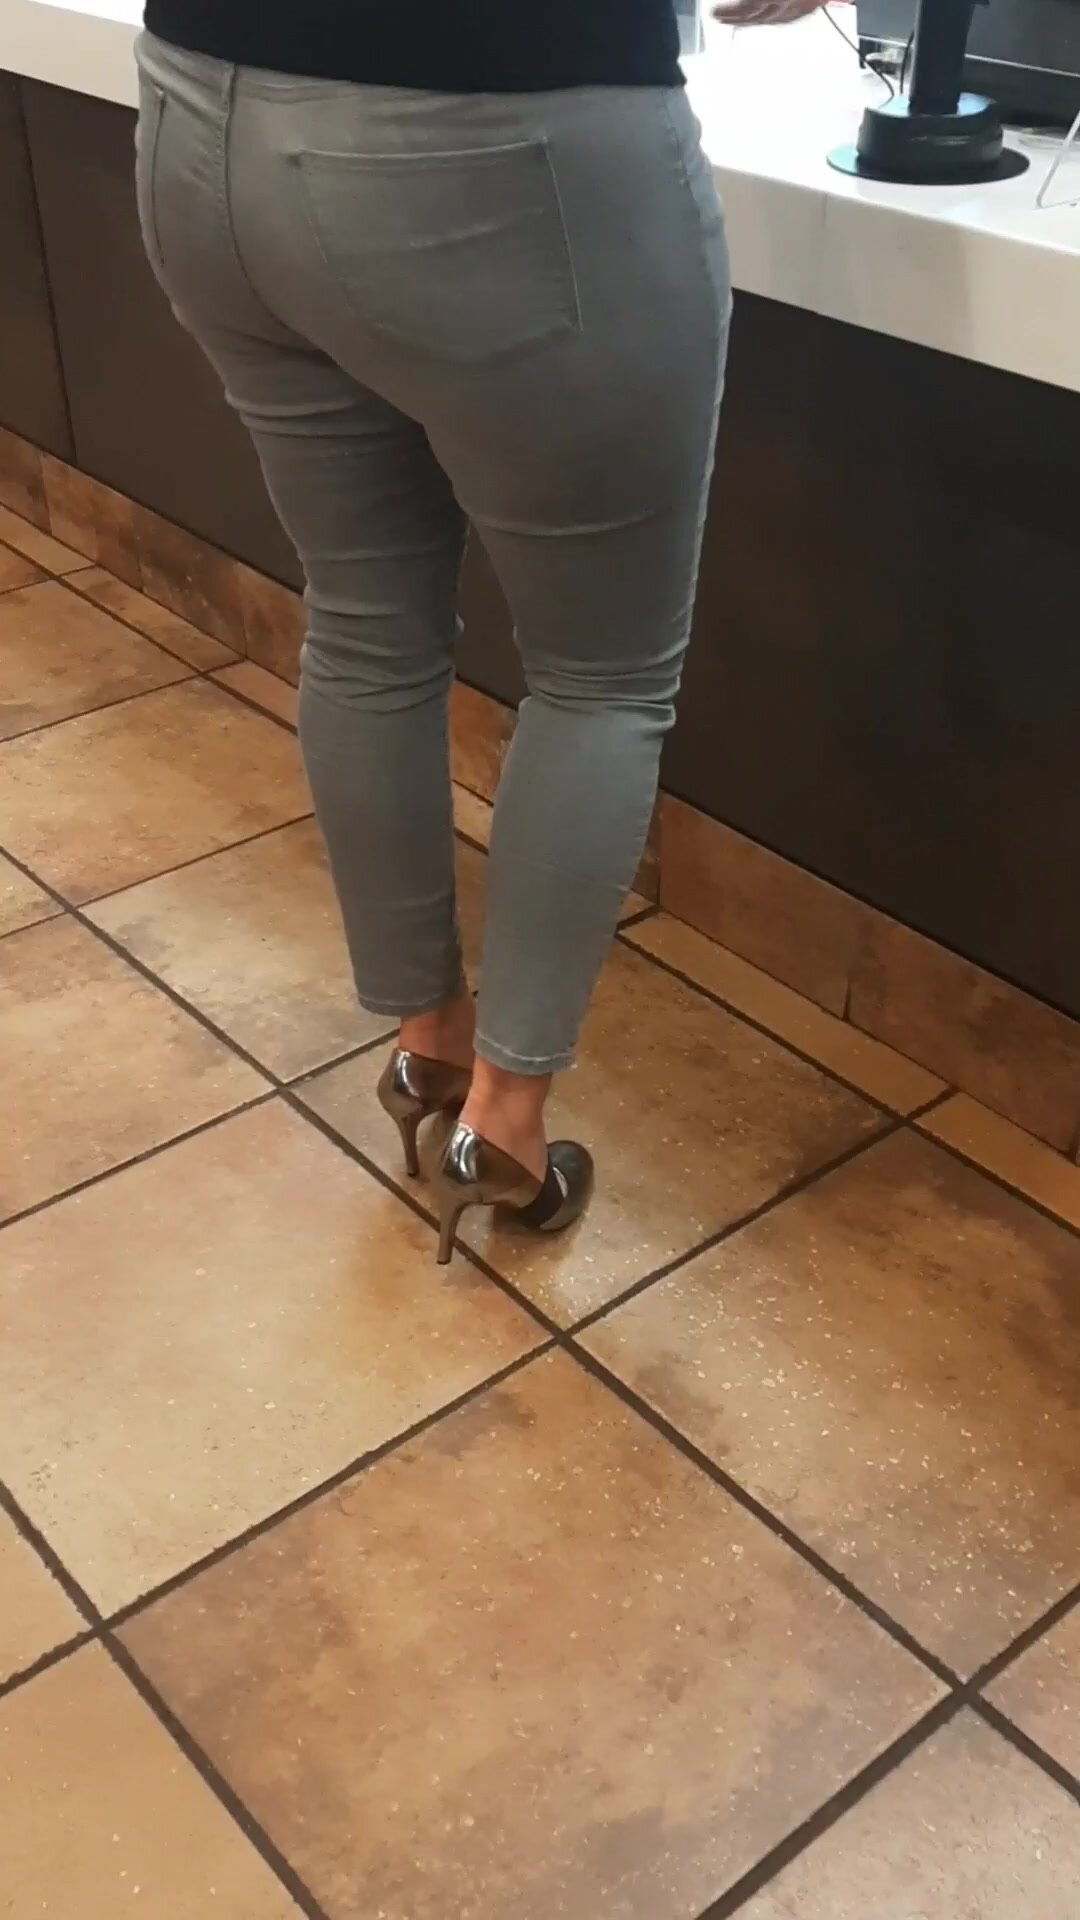 Evil Blonde Pissing All Over McDonalds Restaurant Floor